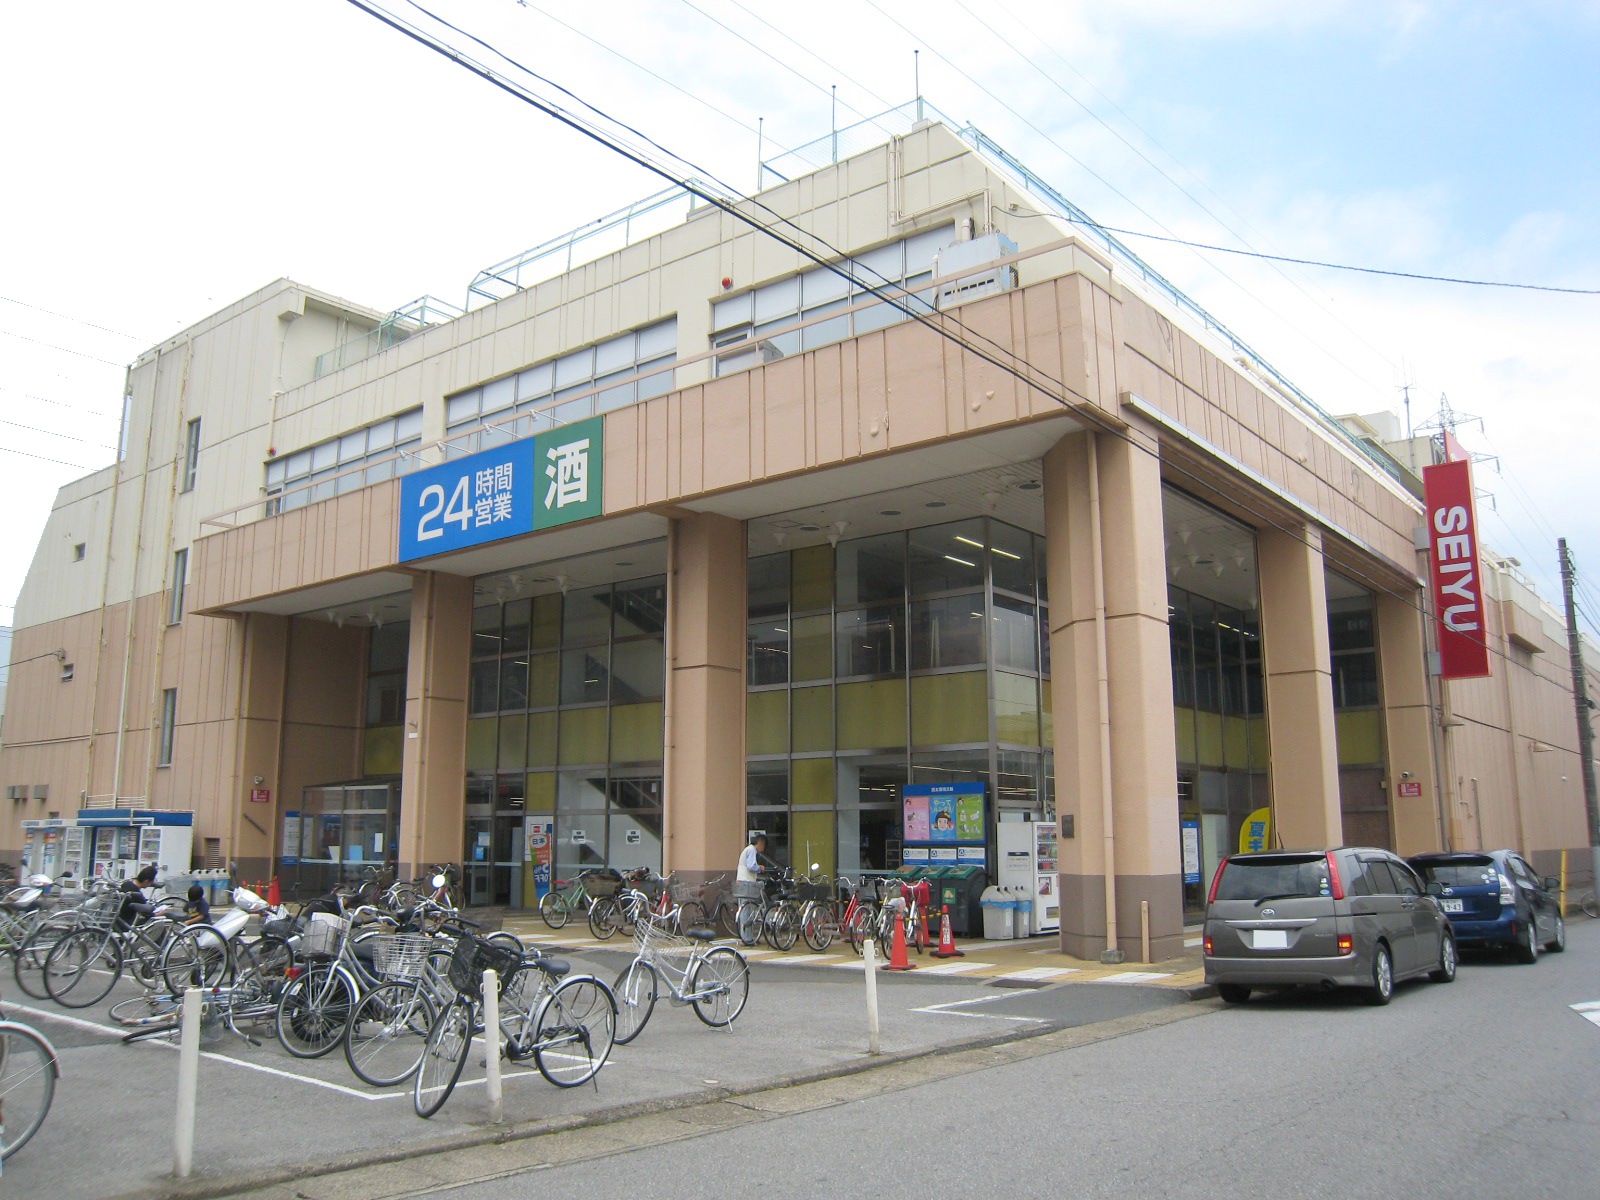 Supermarket. Seiyu Tsuga store up to (super) 366m